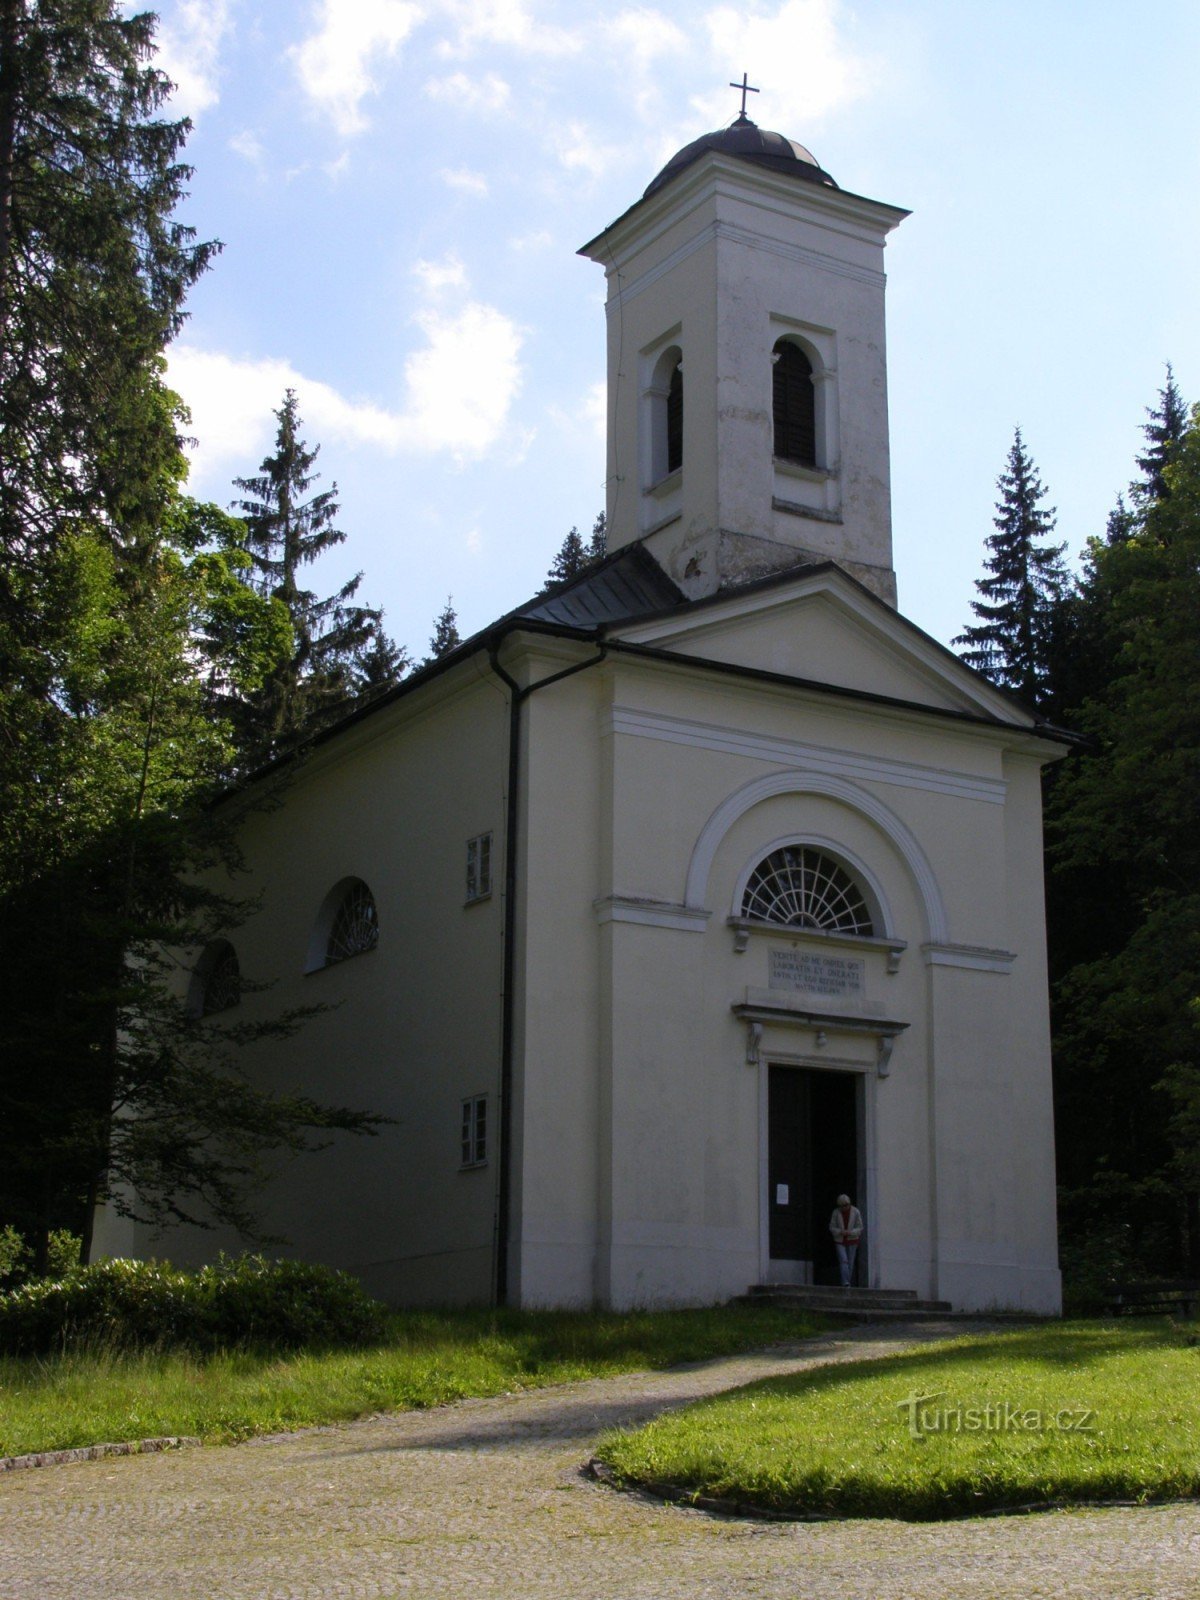 Karlova Studánka - Vår Frus kyrka för helandet av de sjuka